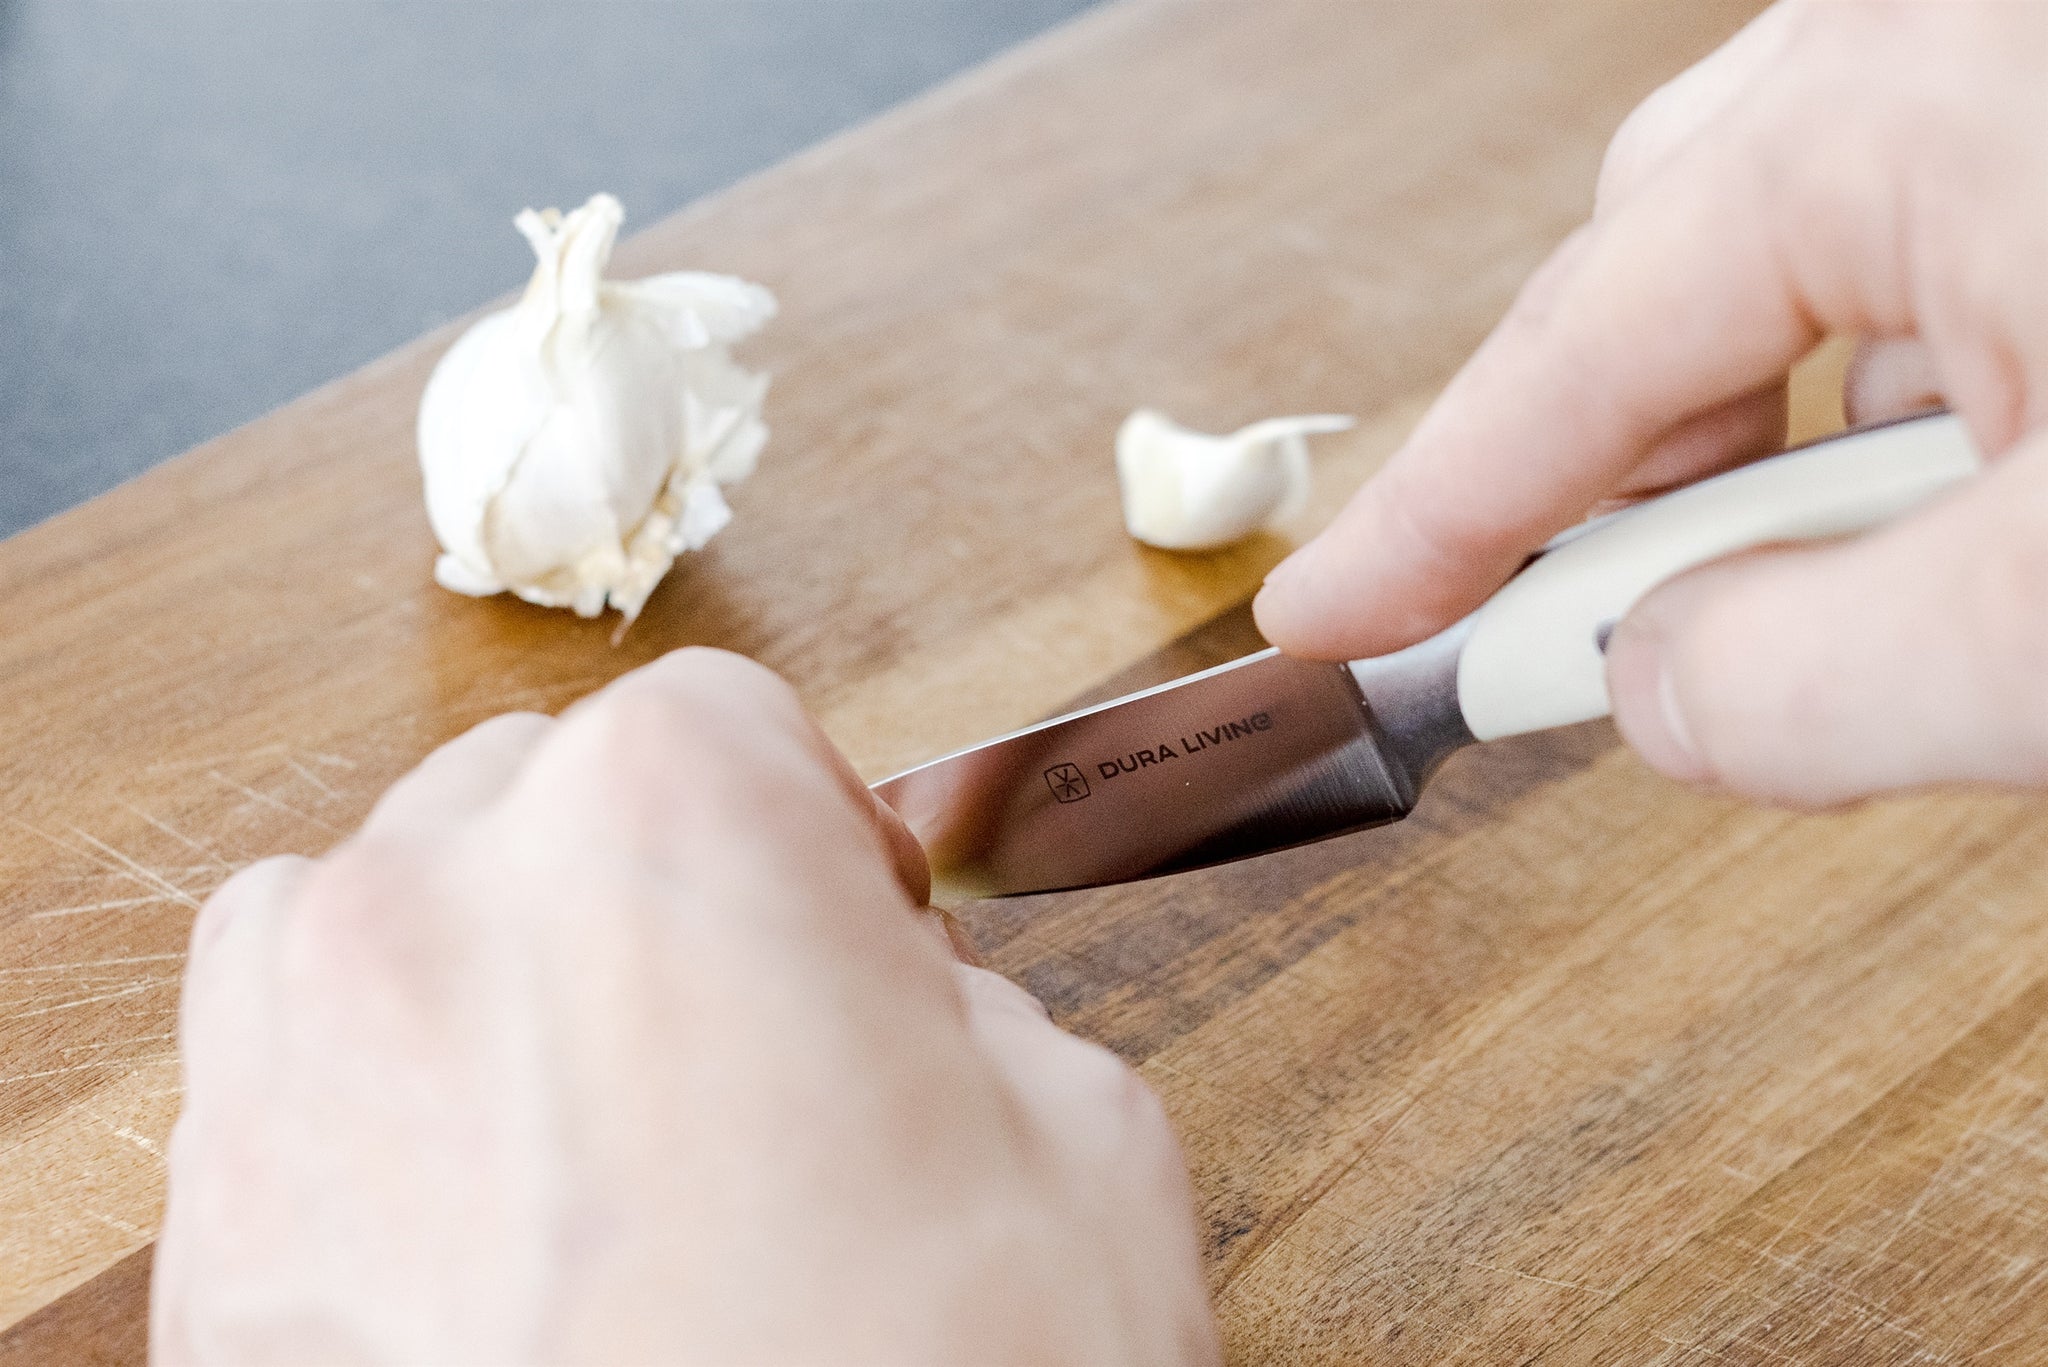 Elite 3.5 inch Paring Knife - Cream